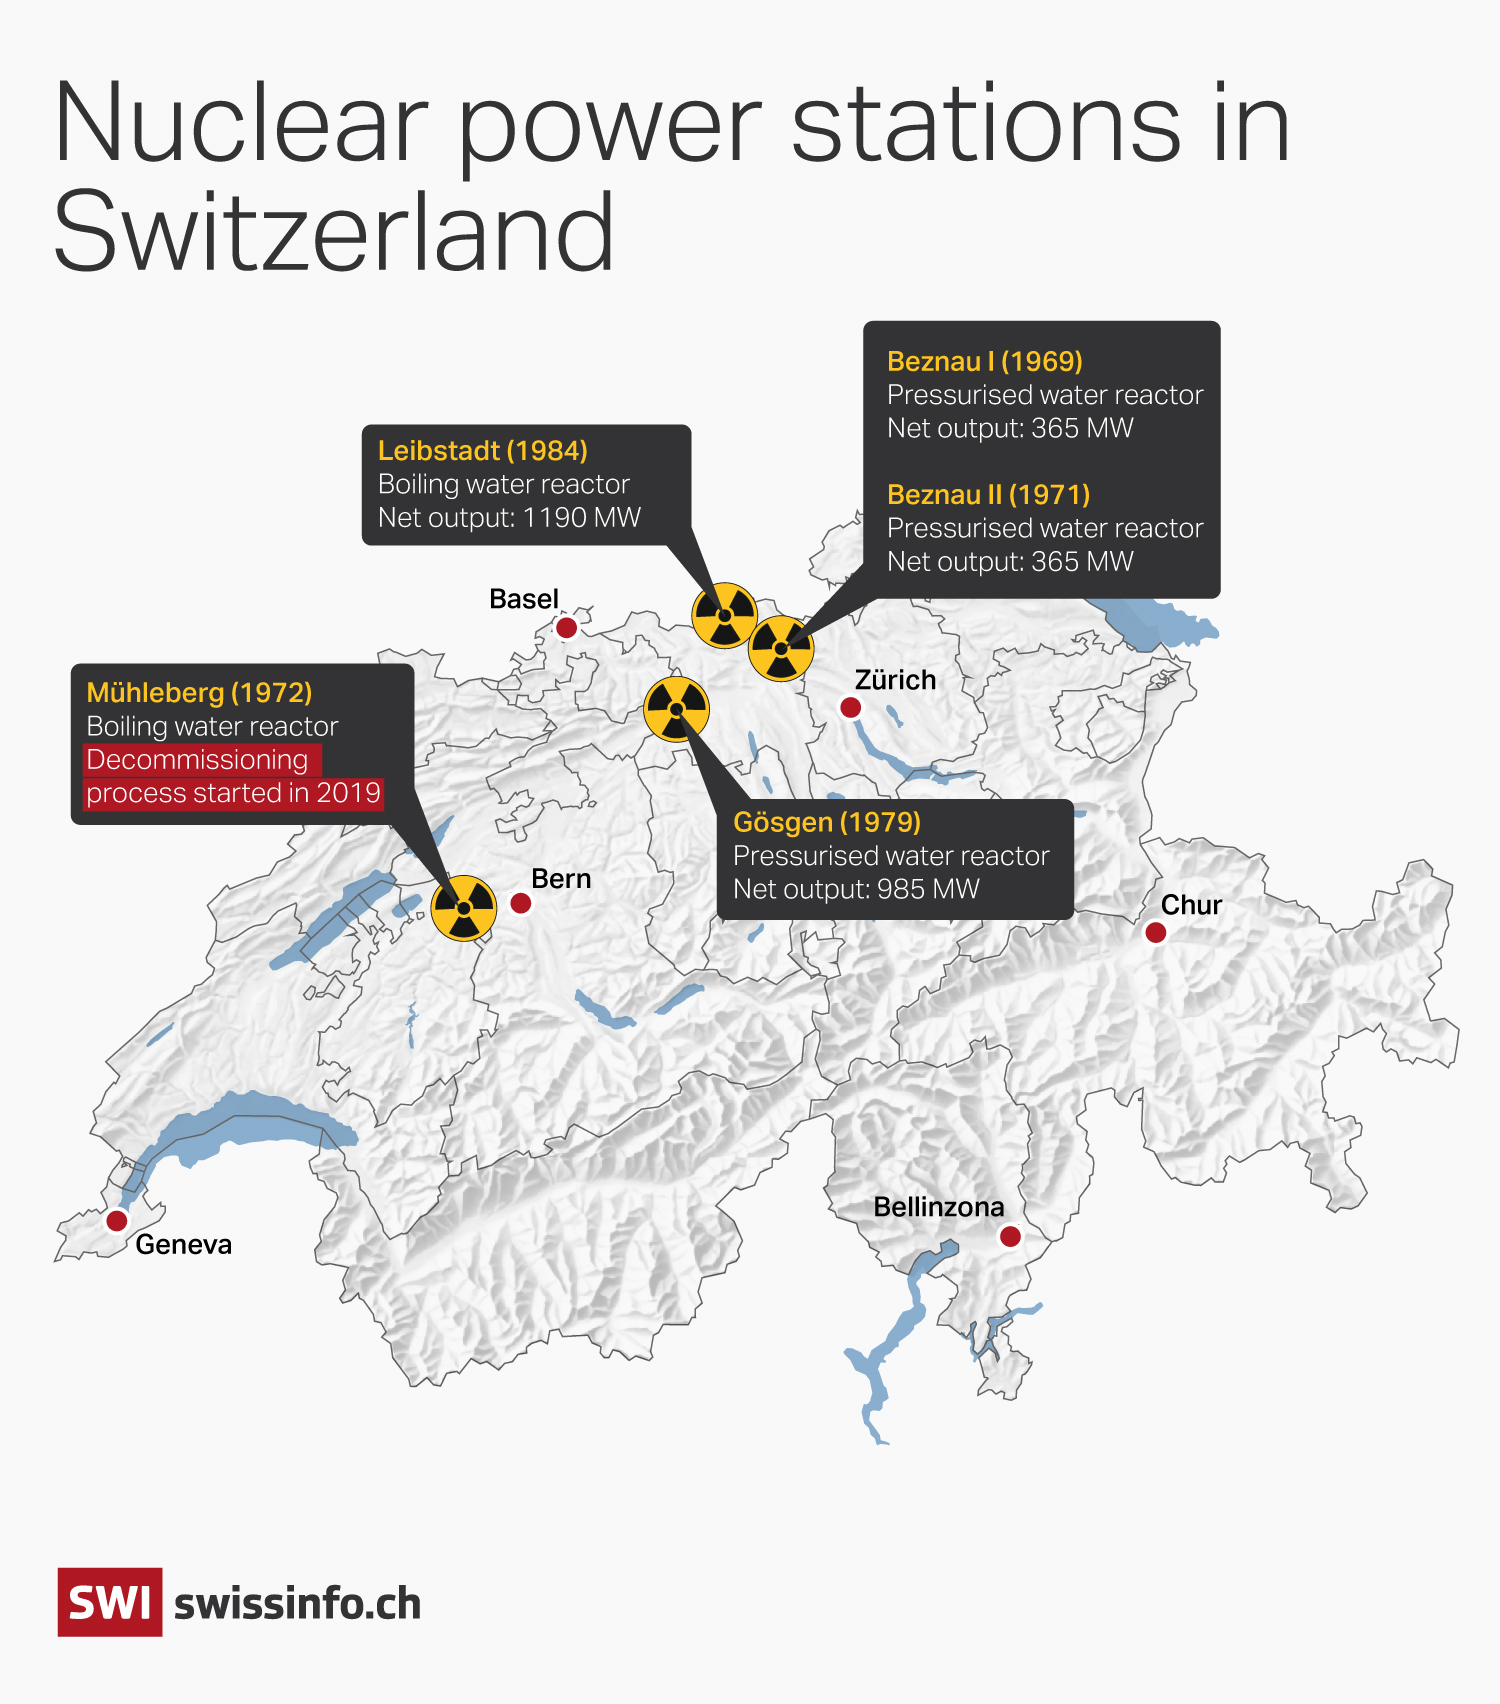 Swiss nuclear power plants